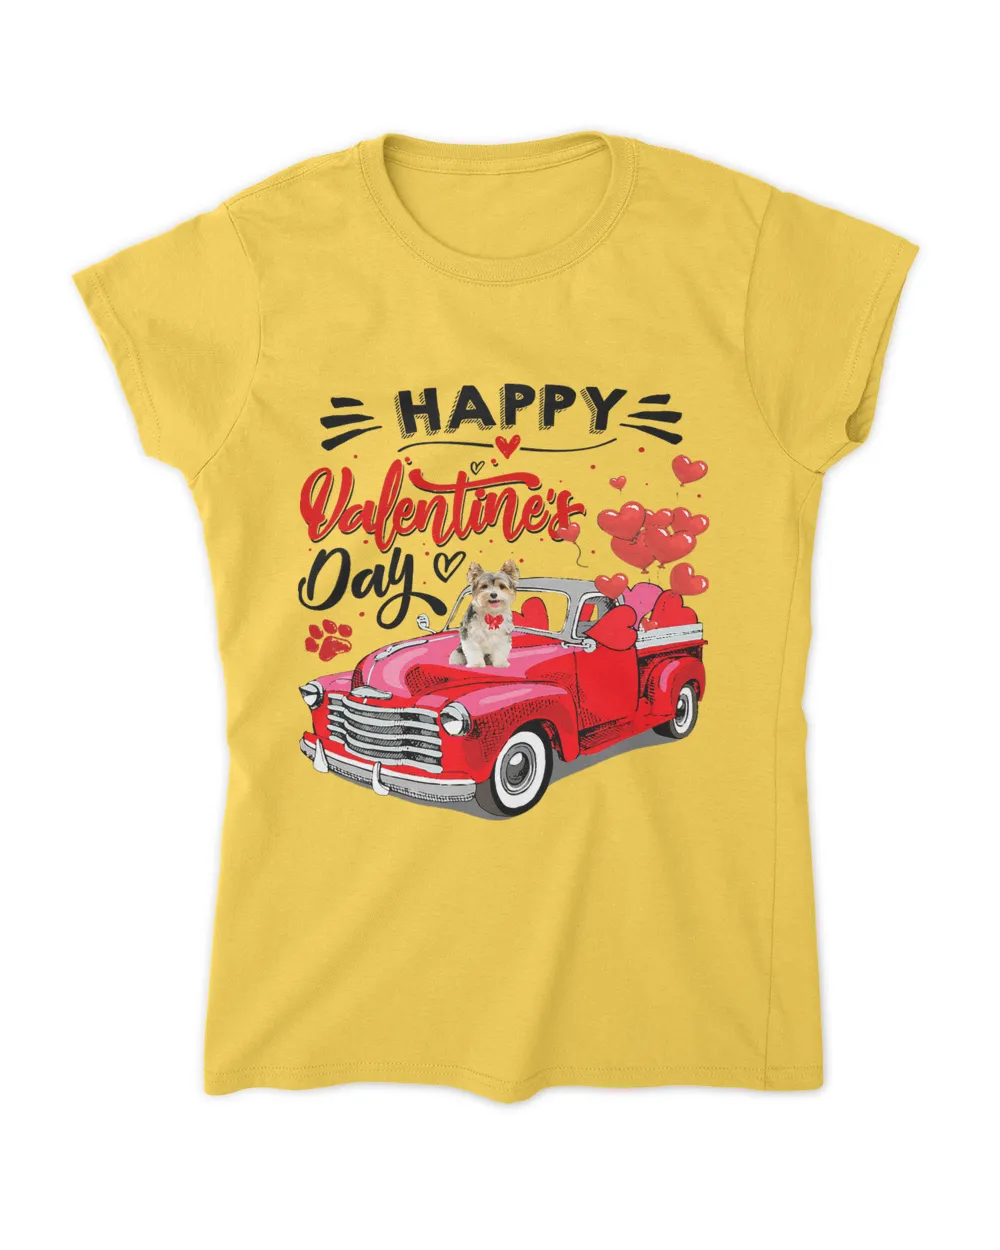 Yorkshire Terrier Red Truck Happy Valentines Day Valentine